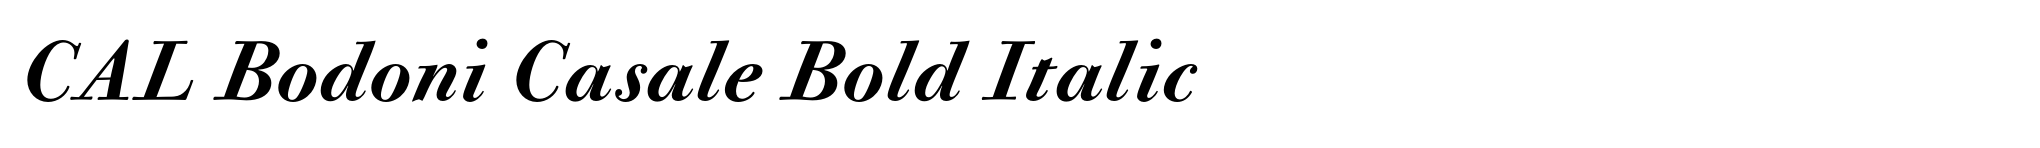 CAL Bodoni Casale Bold Italic image